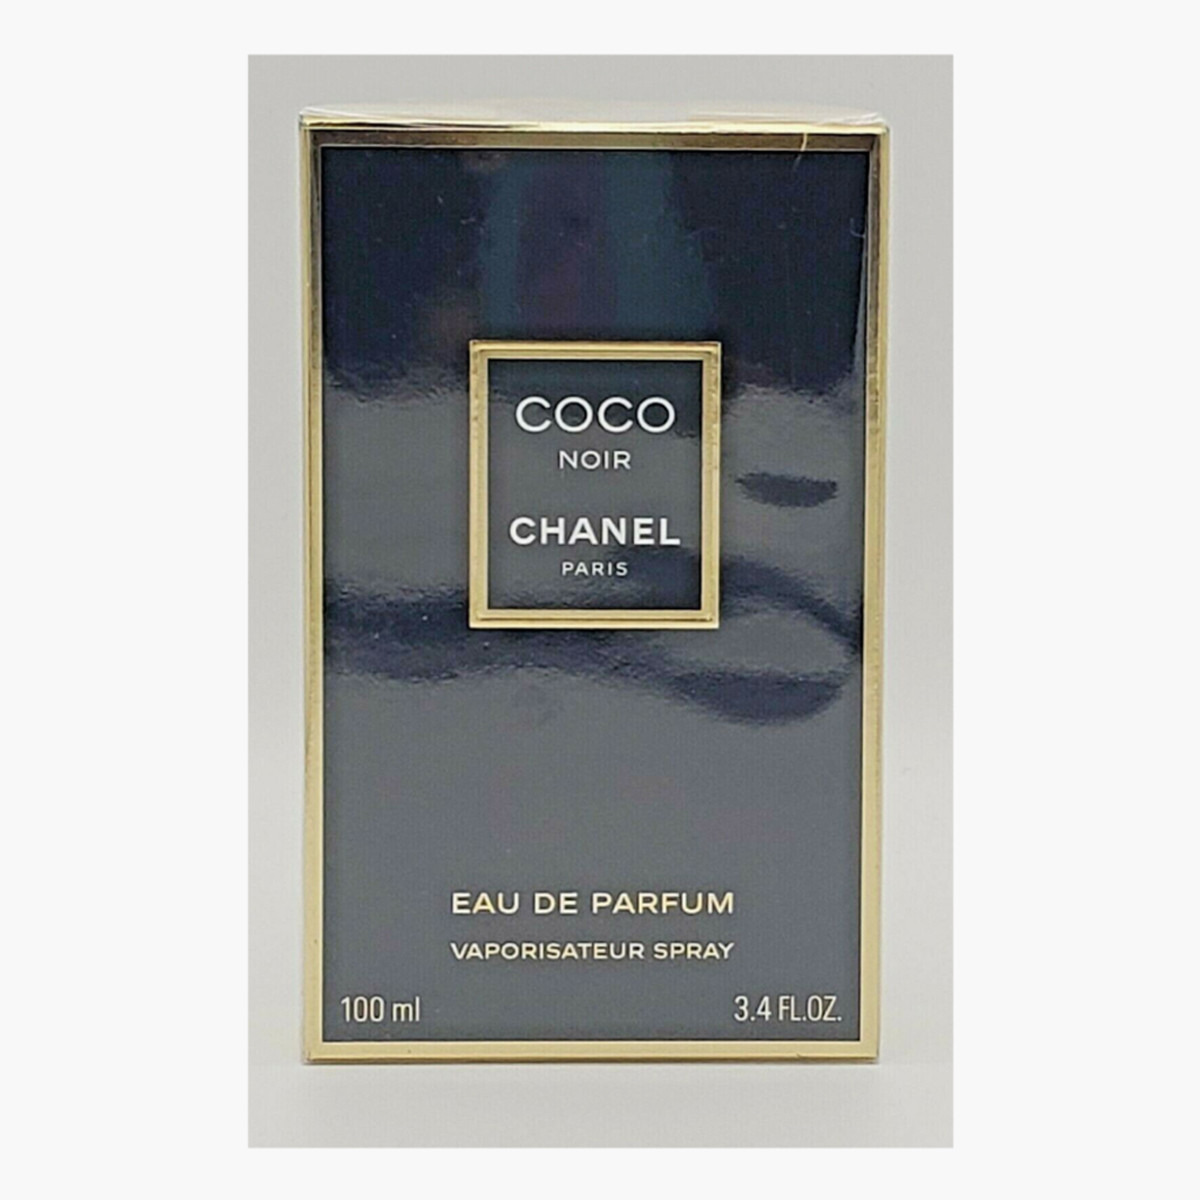 Buy Chanel Coco Noir Eau de Parfum for Women - 100 ml Online